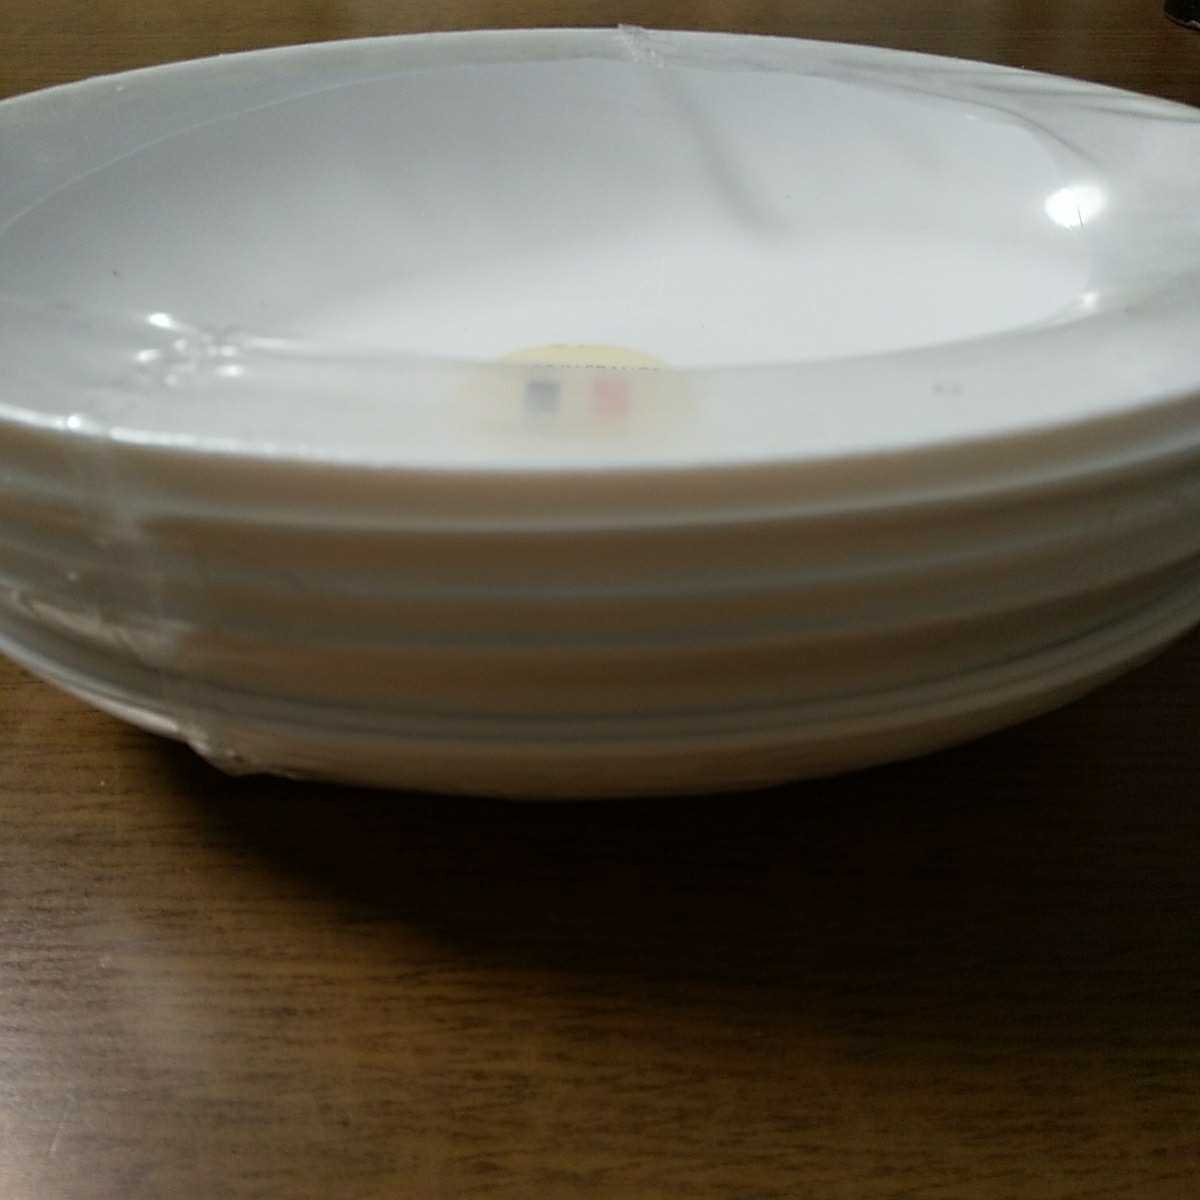 ヤマザキ春のパン祭り山崎春のパンまつり 2003年白いオーバルボウル6枚セット 白い皿 カレー皿 パスタ皿 アルコパルの画像2